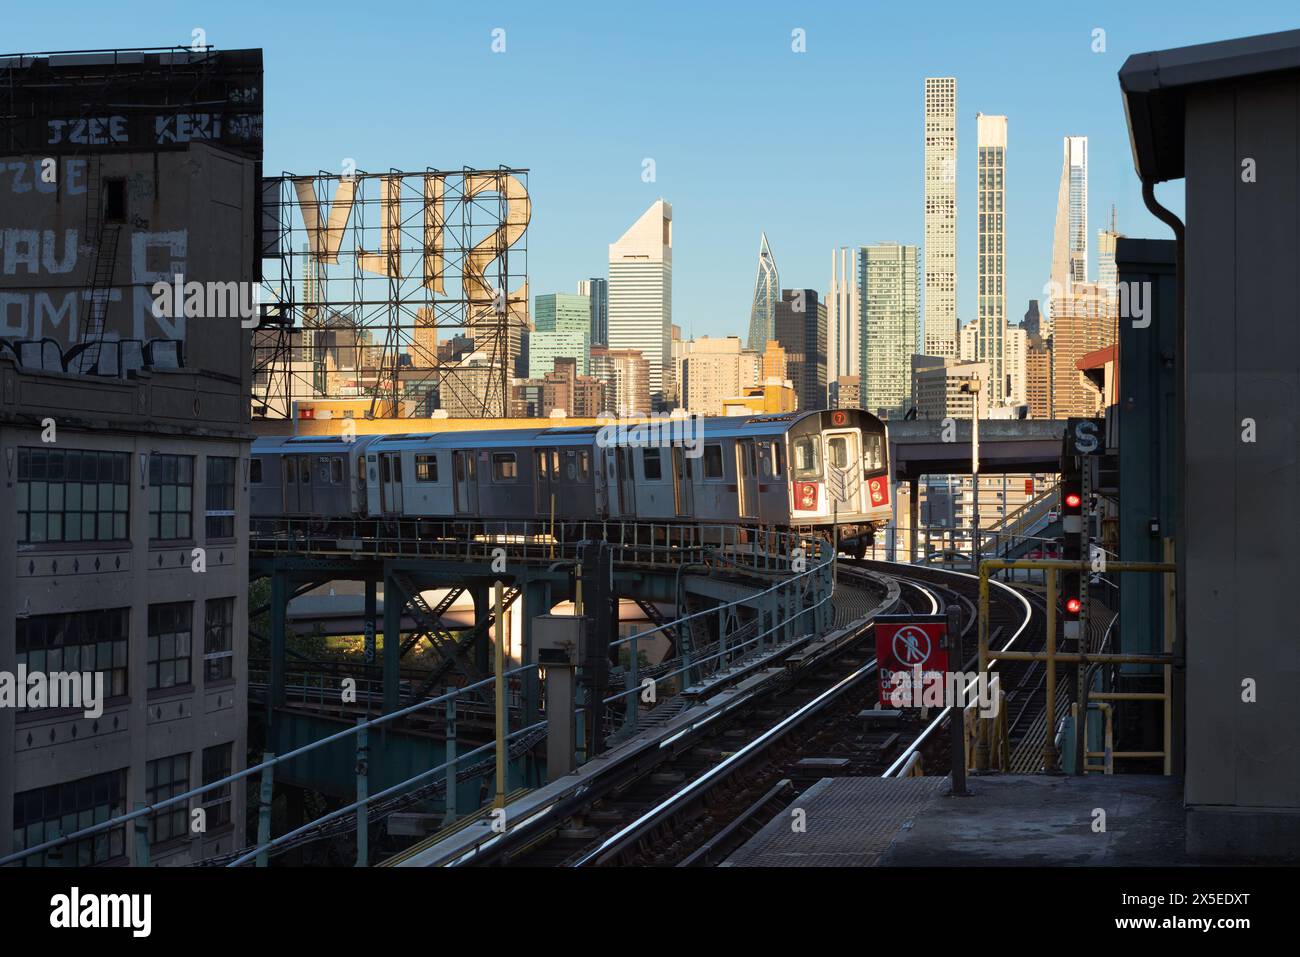 New York City, train numéro 7 et voies de métro surélevées à long Island City avec vue matinale sur les gratte-ciel de l'Upper East Side (Manhattan) Banque D'Images